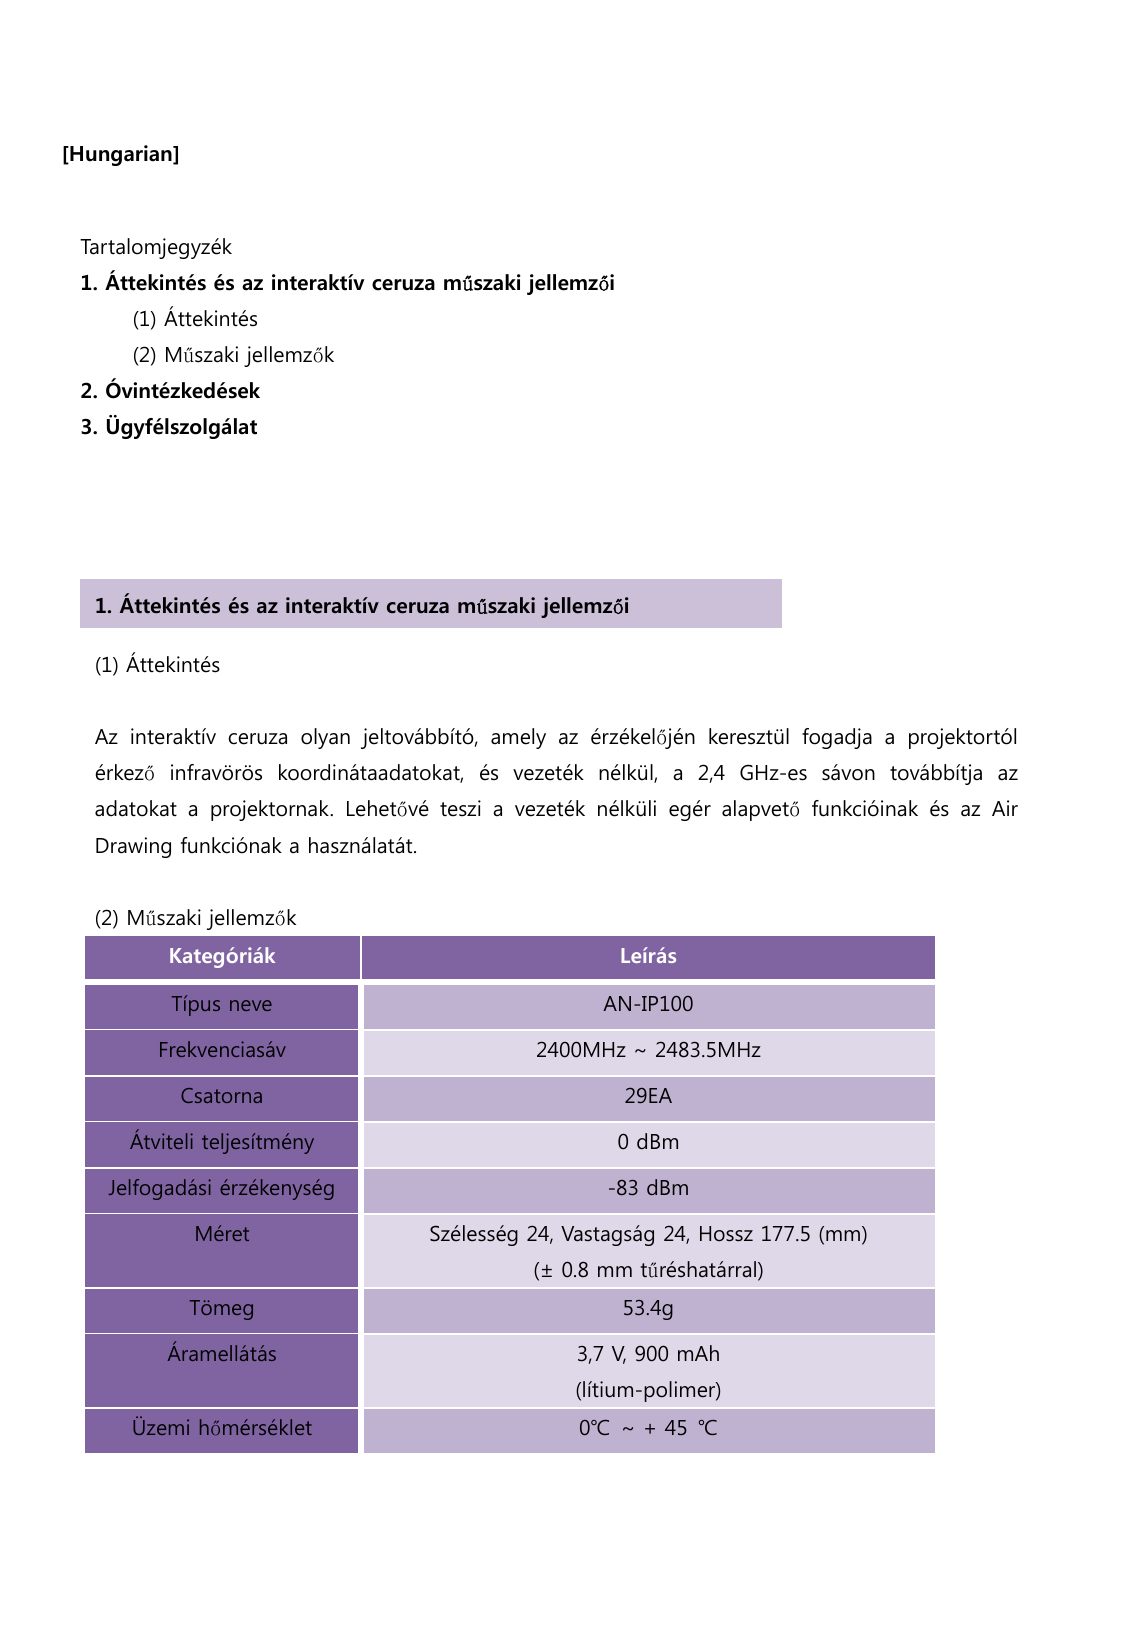  [Hungarian]                                       Tartalomjegyzék   1. Áttekintés és az interaktív ceruza műszaki jellemzői      (1) Áttekintés       (2) Műszaki jellemzők 2. Óvintézkedések   3. Ügyfélszolgálat (1) Áttekintés    Az  interaktív  ceruza  olyan  jeltovábbító,  amely  az  érzékelőjén  keresztül  fogadja  a  projektortól érkező infravörös koordinátaadatokat, és vezeték nélkül, a 2,4 GHz-es  sávon  továbbítja  az adatokat  a  projektornak.  Lehetővé  teszi  a  vezeték  nélküli  egér  alapvető funkcióinak és az Air Drawing funkciónak a használatát.  (2) Műszaki jellemzők Kategóriák  Leírás Típus neve AN-IP100 Frekvenciasáv 2400MHz ~ 2483.5MHz Csatorna 29EA Átviteli teljesítmény 0 dBm Jelfogadási érzékenység -83 dBm Méret Szélesség 24, Vastagság 24, Hossz 177.5 (mm)  (± 0.8 mm tűréshatárral) Tömeg 53.4g Áramellátás 3,7 V, 900 mAh (lítium-polimer) Üzemi hőmérséklet 0℃ ~ + 45 ℃  1. Áttekintés és az interaktív ceruza műszaki jellemzői 